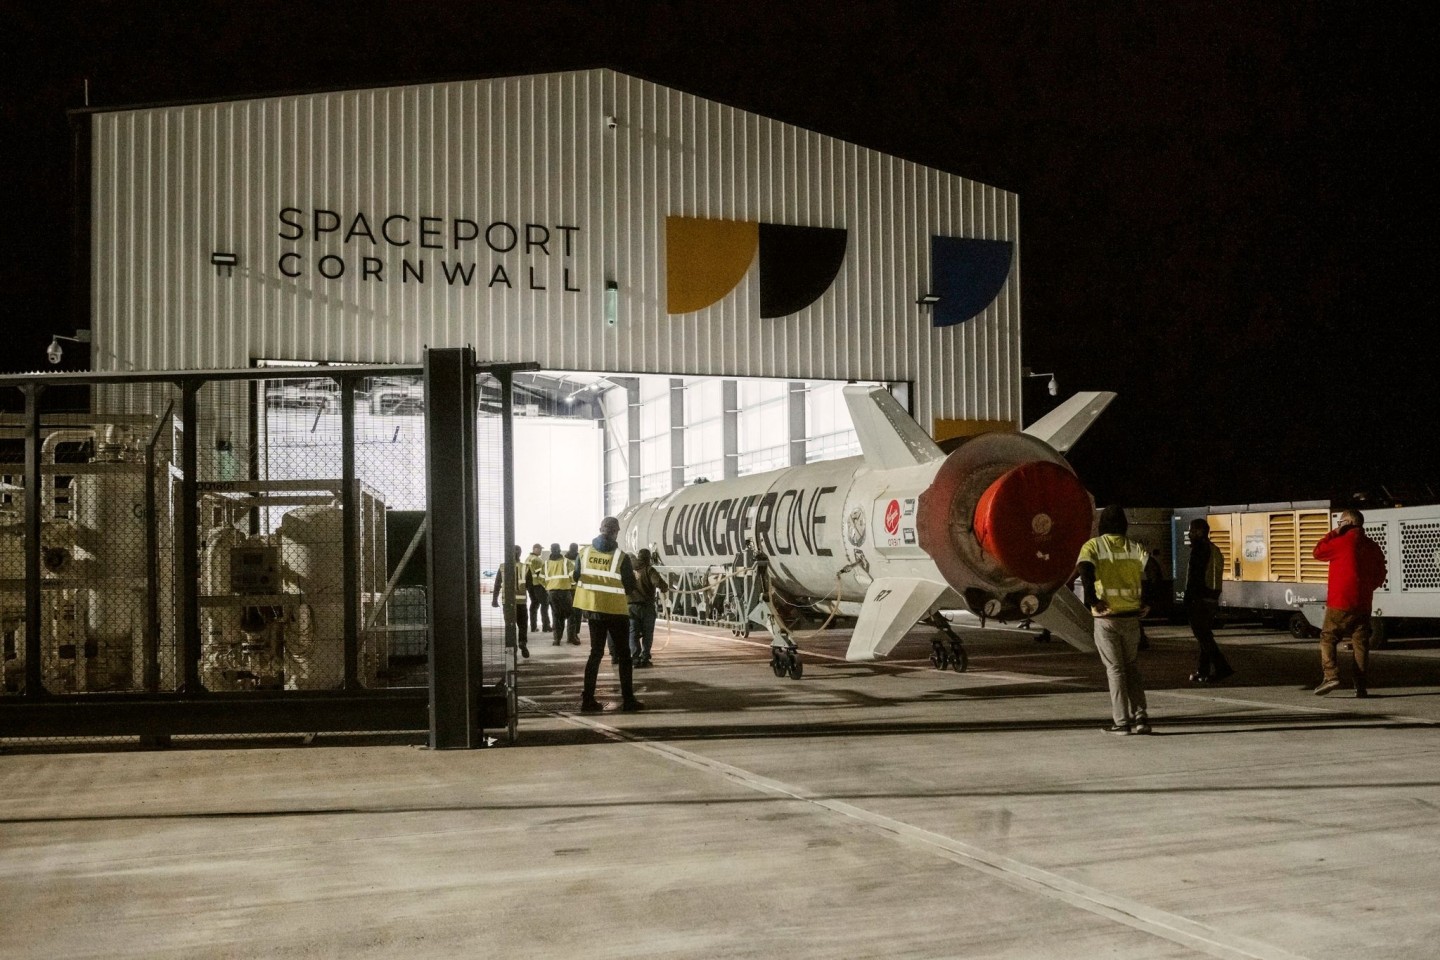 Ingenieure treffen am Flughafen Cornwall letzte Vorbereitungen für einen Satellitenstart, der nun gescheitert ist